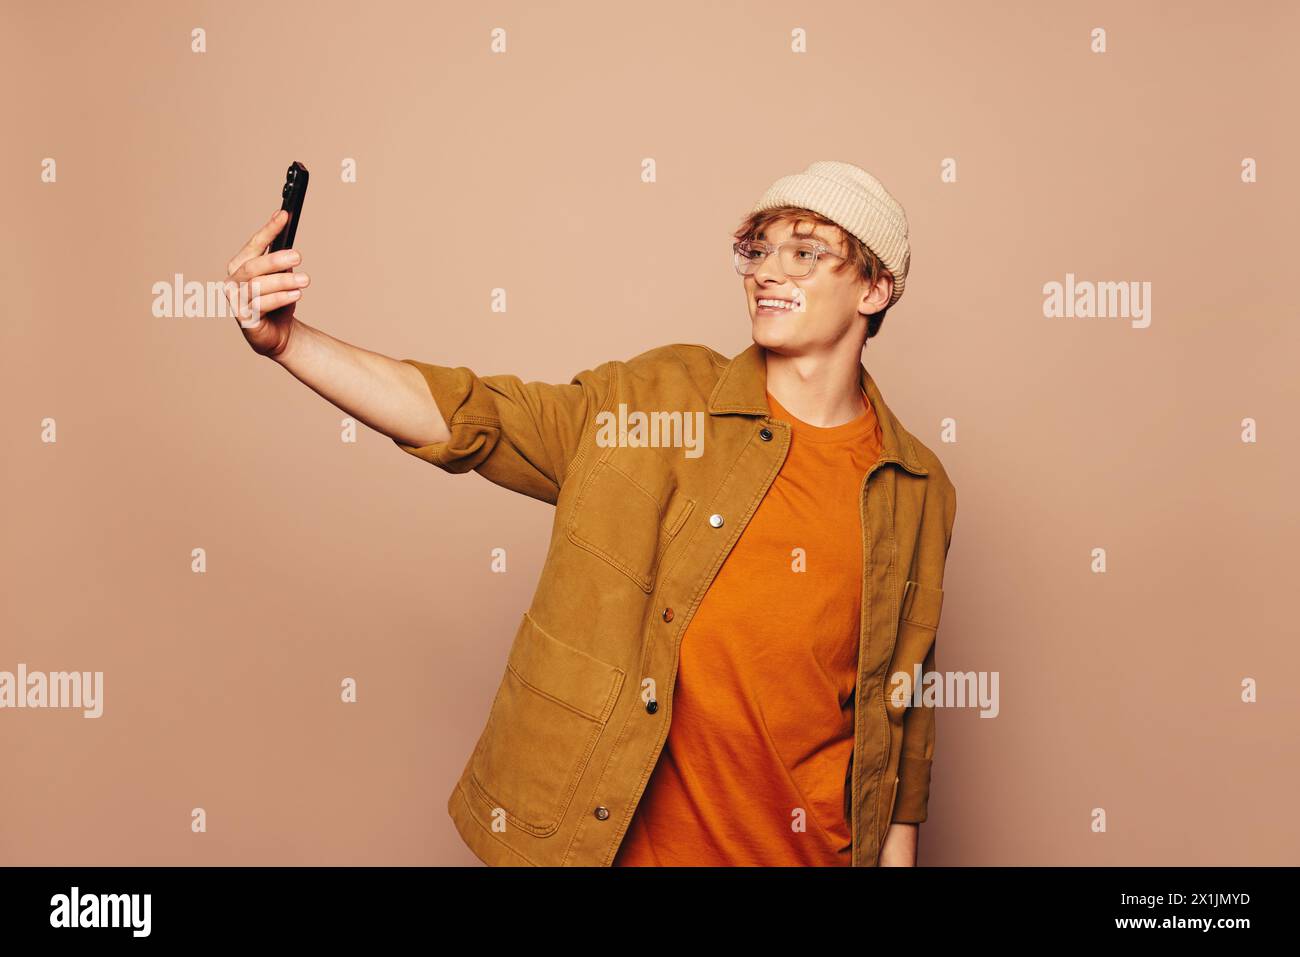 Homme souriant dans des vêtements décontractés se dresse contre un fond de pêche vibrant. Il tient un téléphone portable, prenant un selfie avec une expression heureuse. Banque D'Images